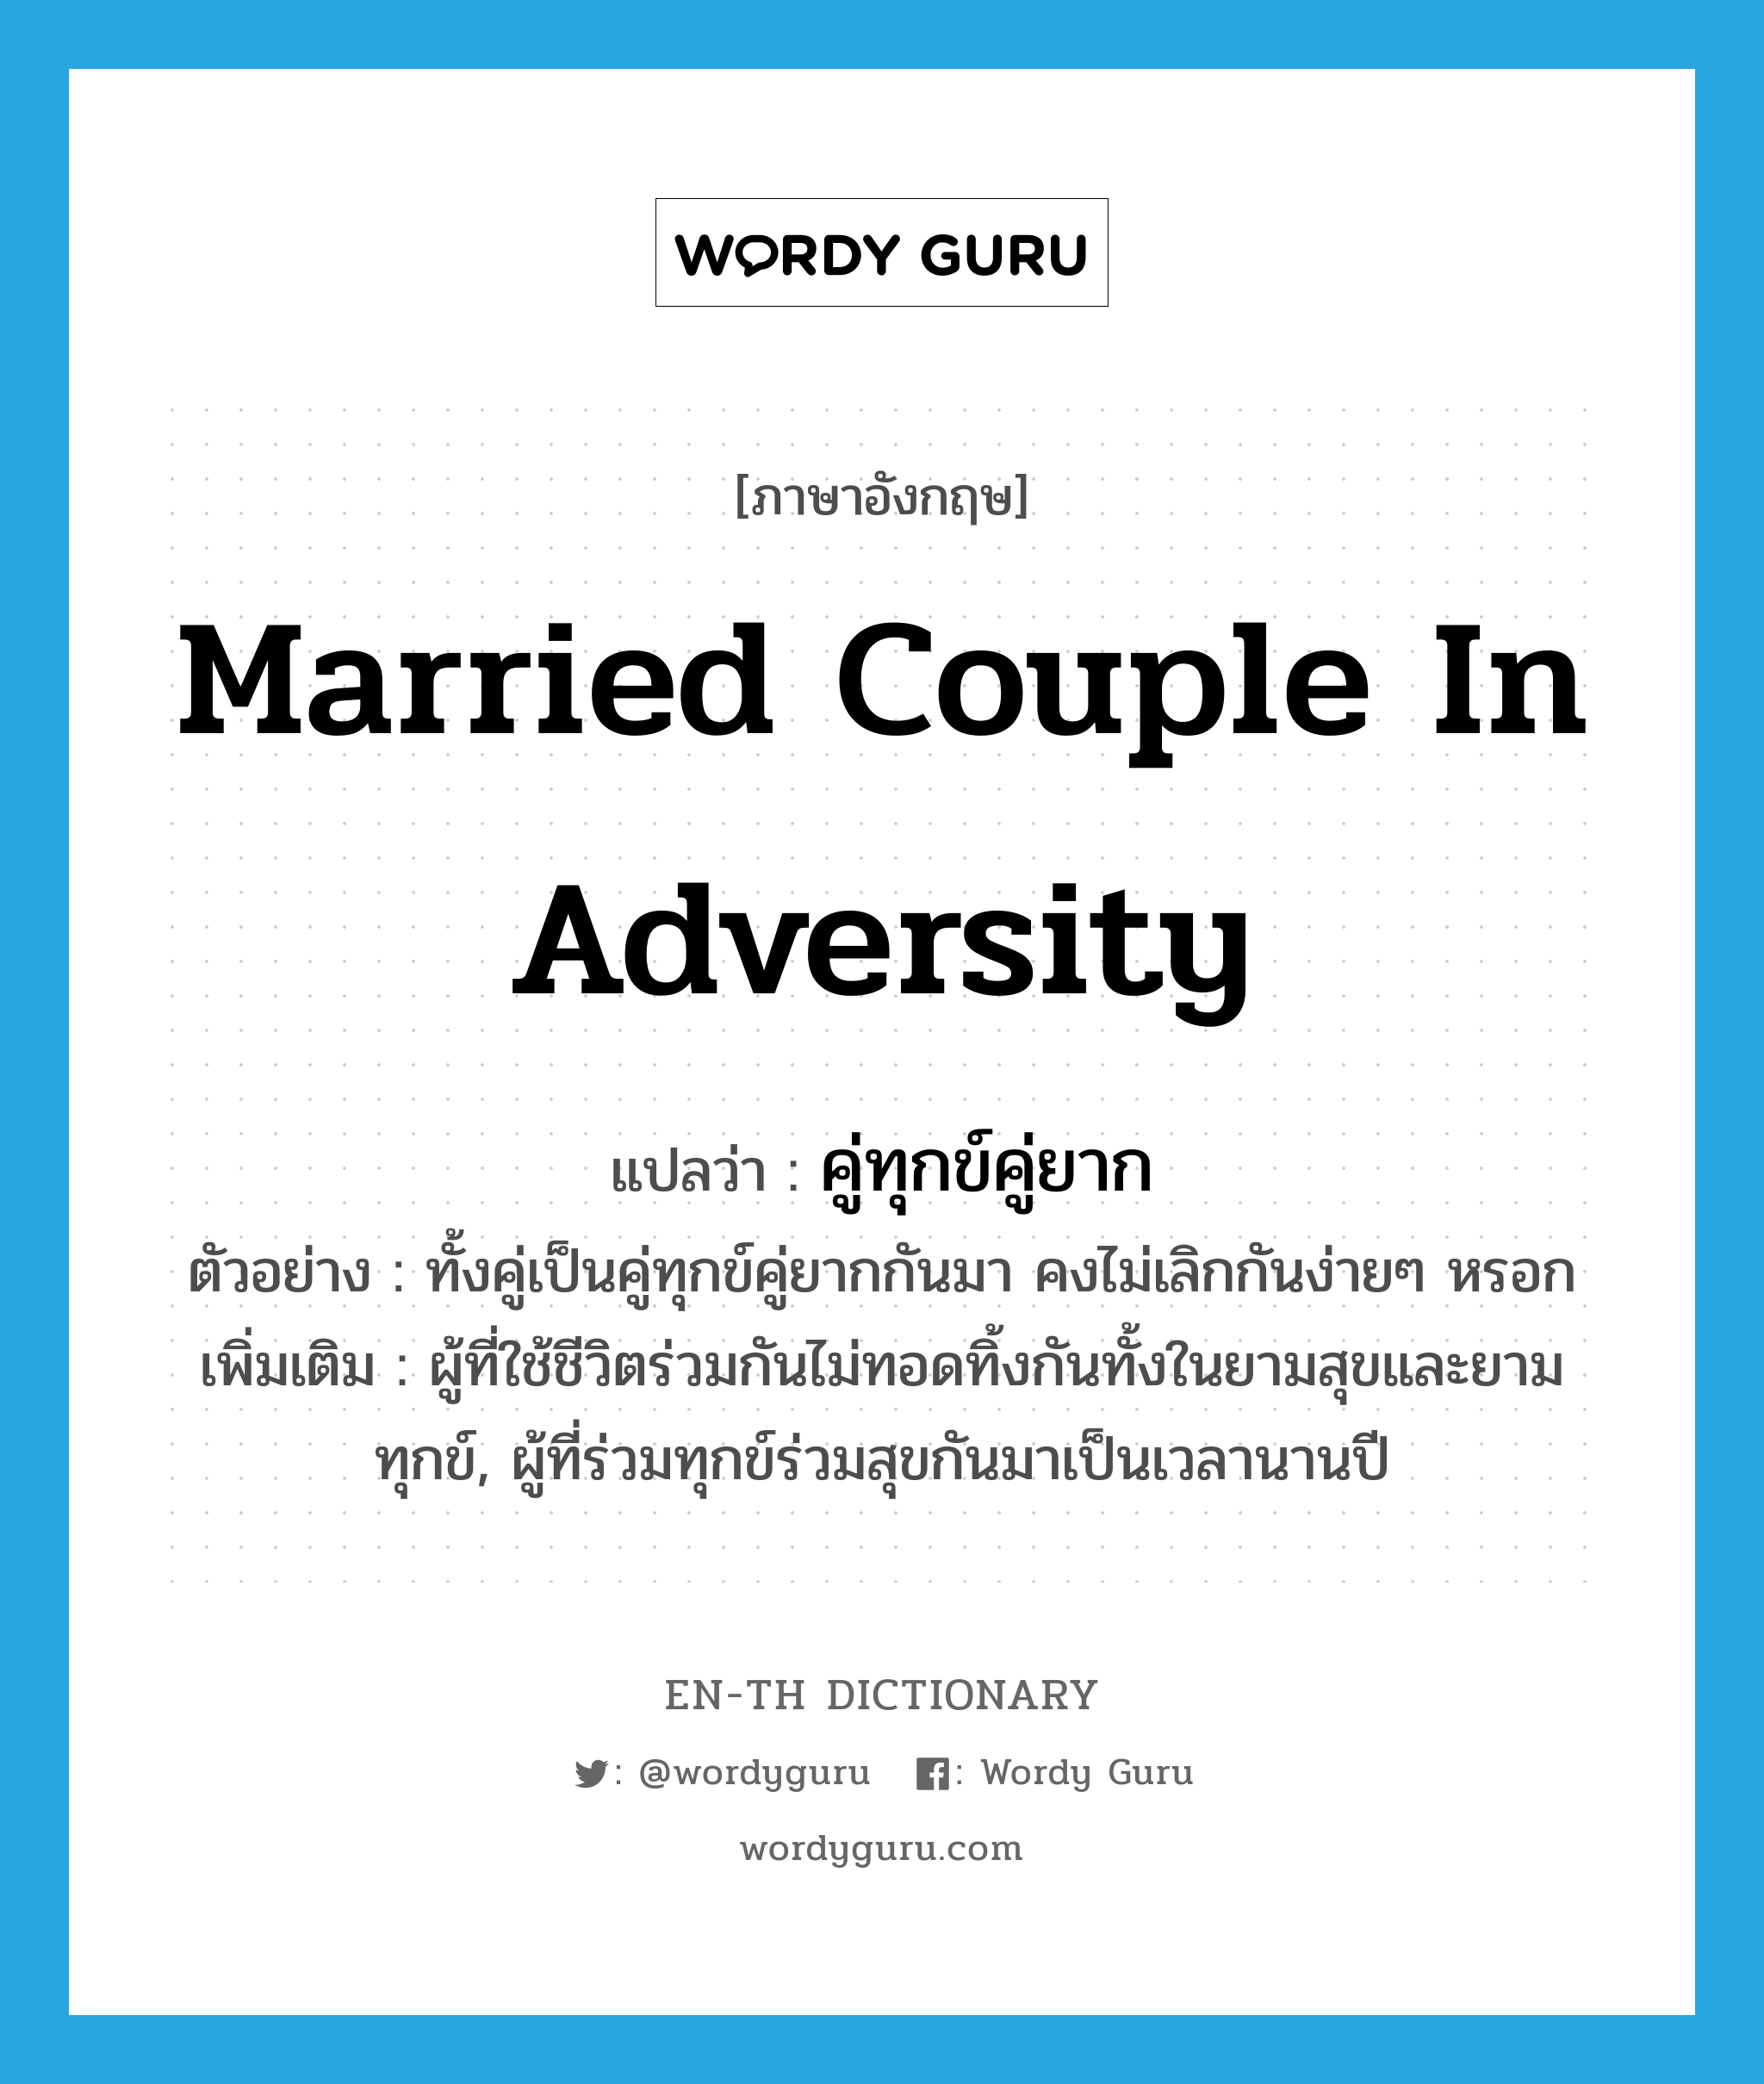 married couple in adversity แปลว่า?, คำศัพท์ภาษาอังกฤษ married couple in adversity แปลว่า คู่ทุกข์คู่ยาก ประเภท N ตัวอย่าง ทั้งคู่เป็นคู่ทุกข์คู่ยากกันมา คงไม่เลิกกันง่ายๆ หรอก เพิ่มเติม ผู้ที่ใช้ชีวิตร่วมกันไม่ทอดทิ้งกันทั้งในยามสุขและยามทุกข์, ผู้ที่ร่วมทุกข์ร่วมสุขกันมาเป็นเวลานานปี หมวด N